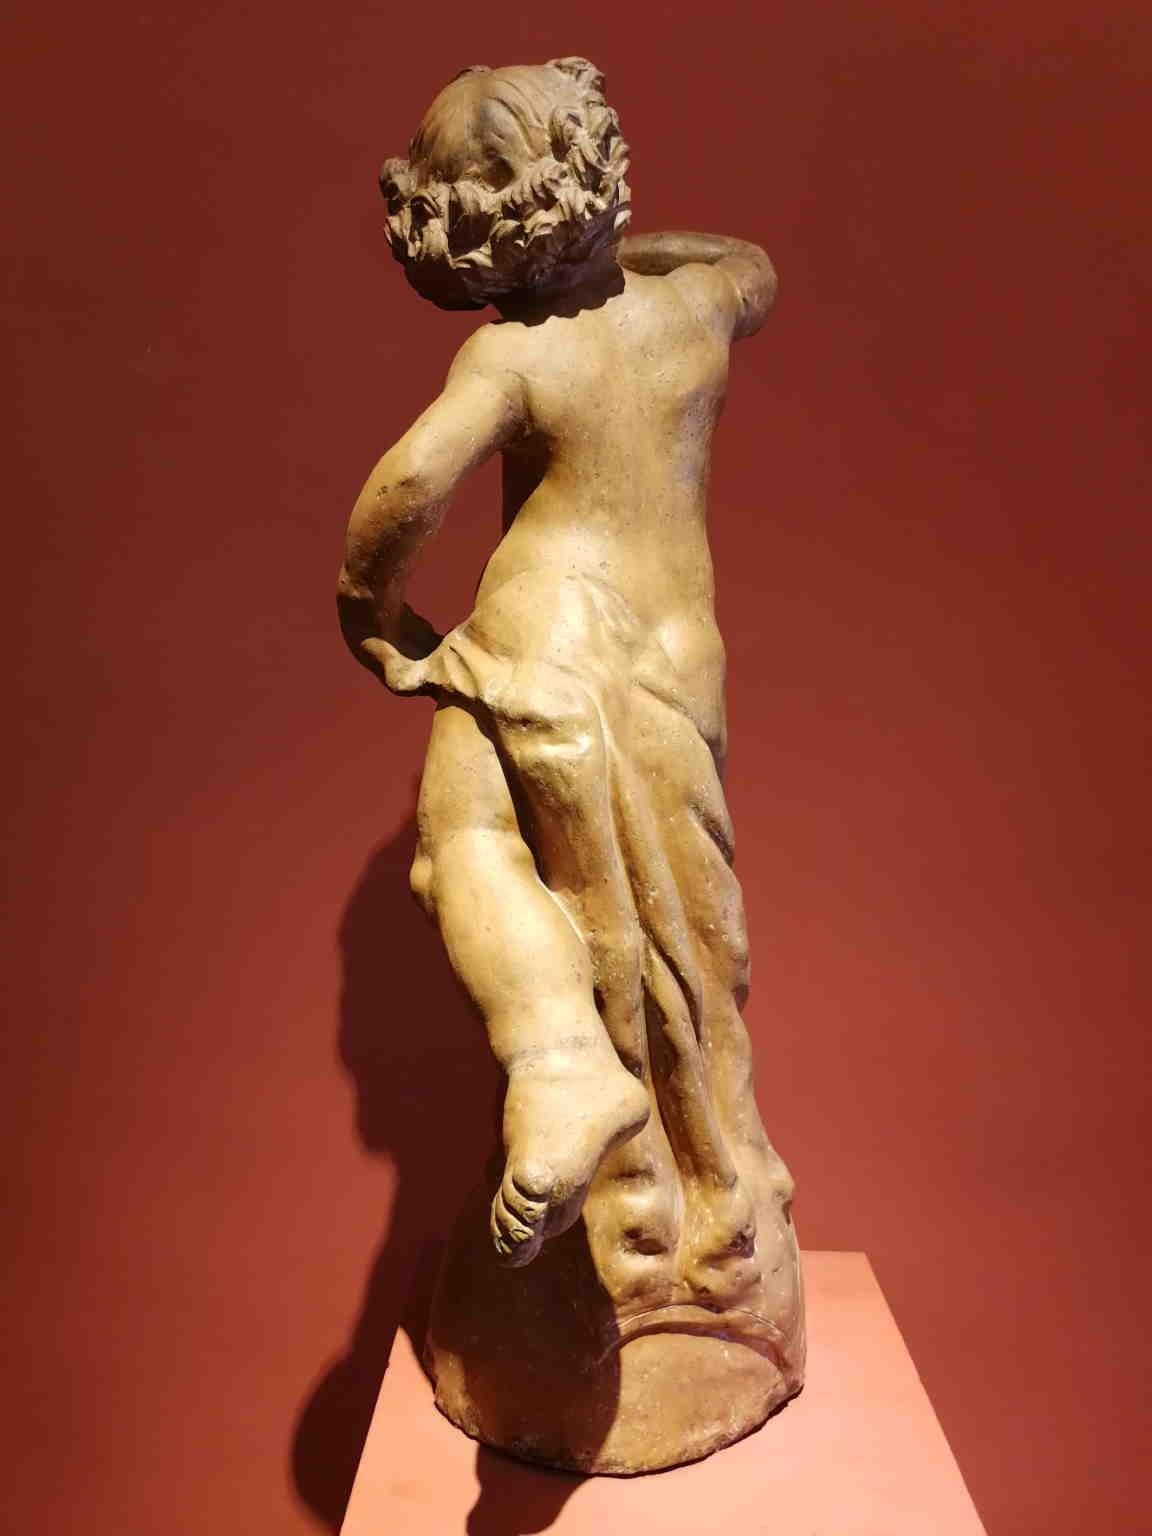 Terrakottastatue, die einen Putto darstellt, der mit einem Tuch um sein Bein bläst. Es ist inspiriert von dem Putto mit Delphin von Andrea del Verrocchio, der für einen Brunnen im Palazzo Vecchio (Florenz) geschaffen wurde. In Anbetracht des